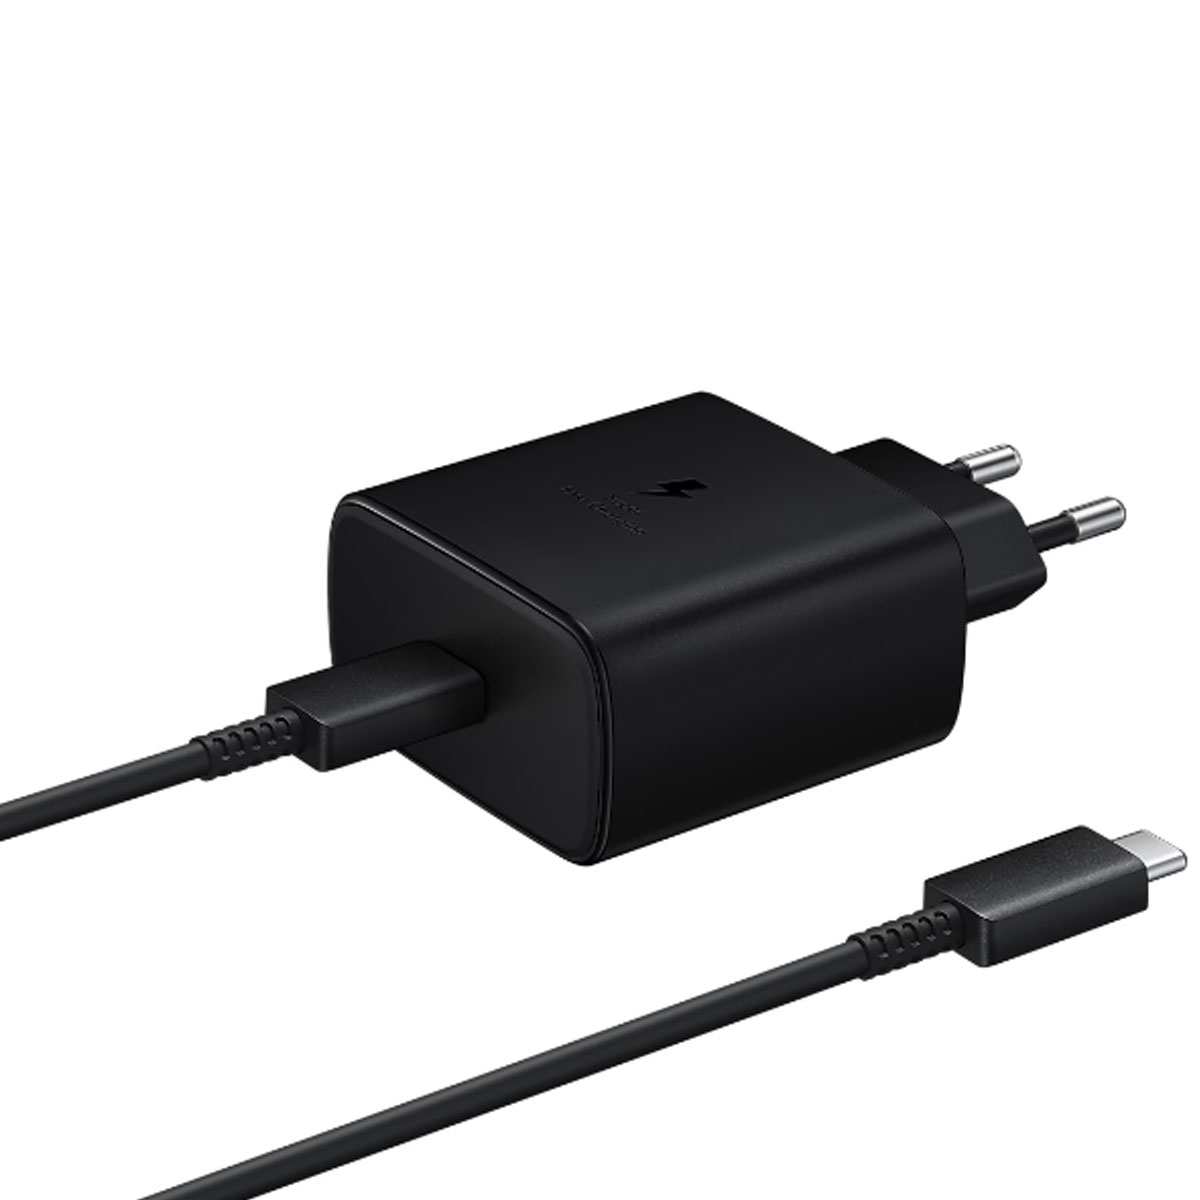 СЗУ (Сетевое зарядное устройство) EP-TA845 с кабелем USB Type C на USB Type C, 45W, 1 USB Type C, длина 1 метр, цвет черный